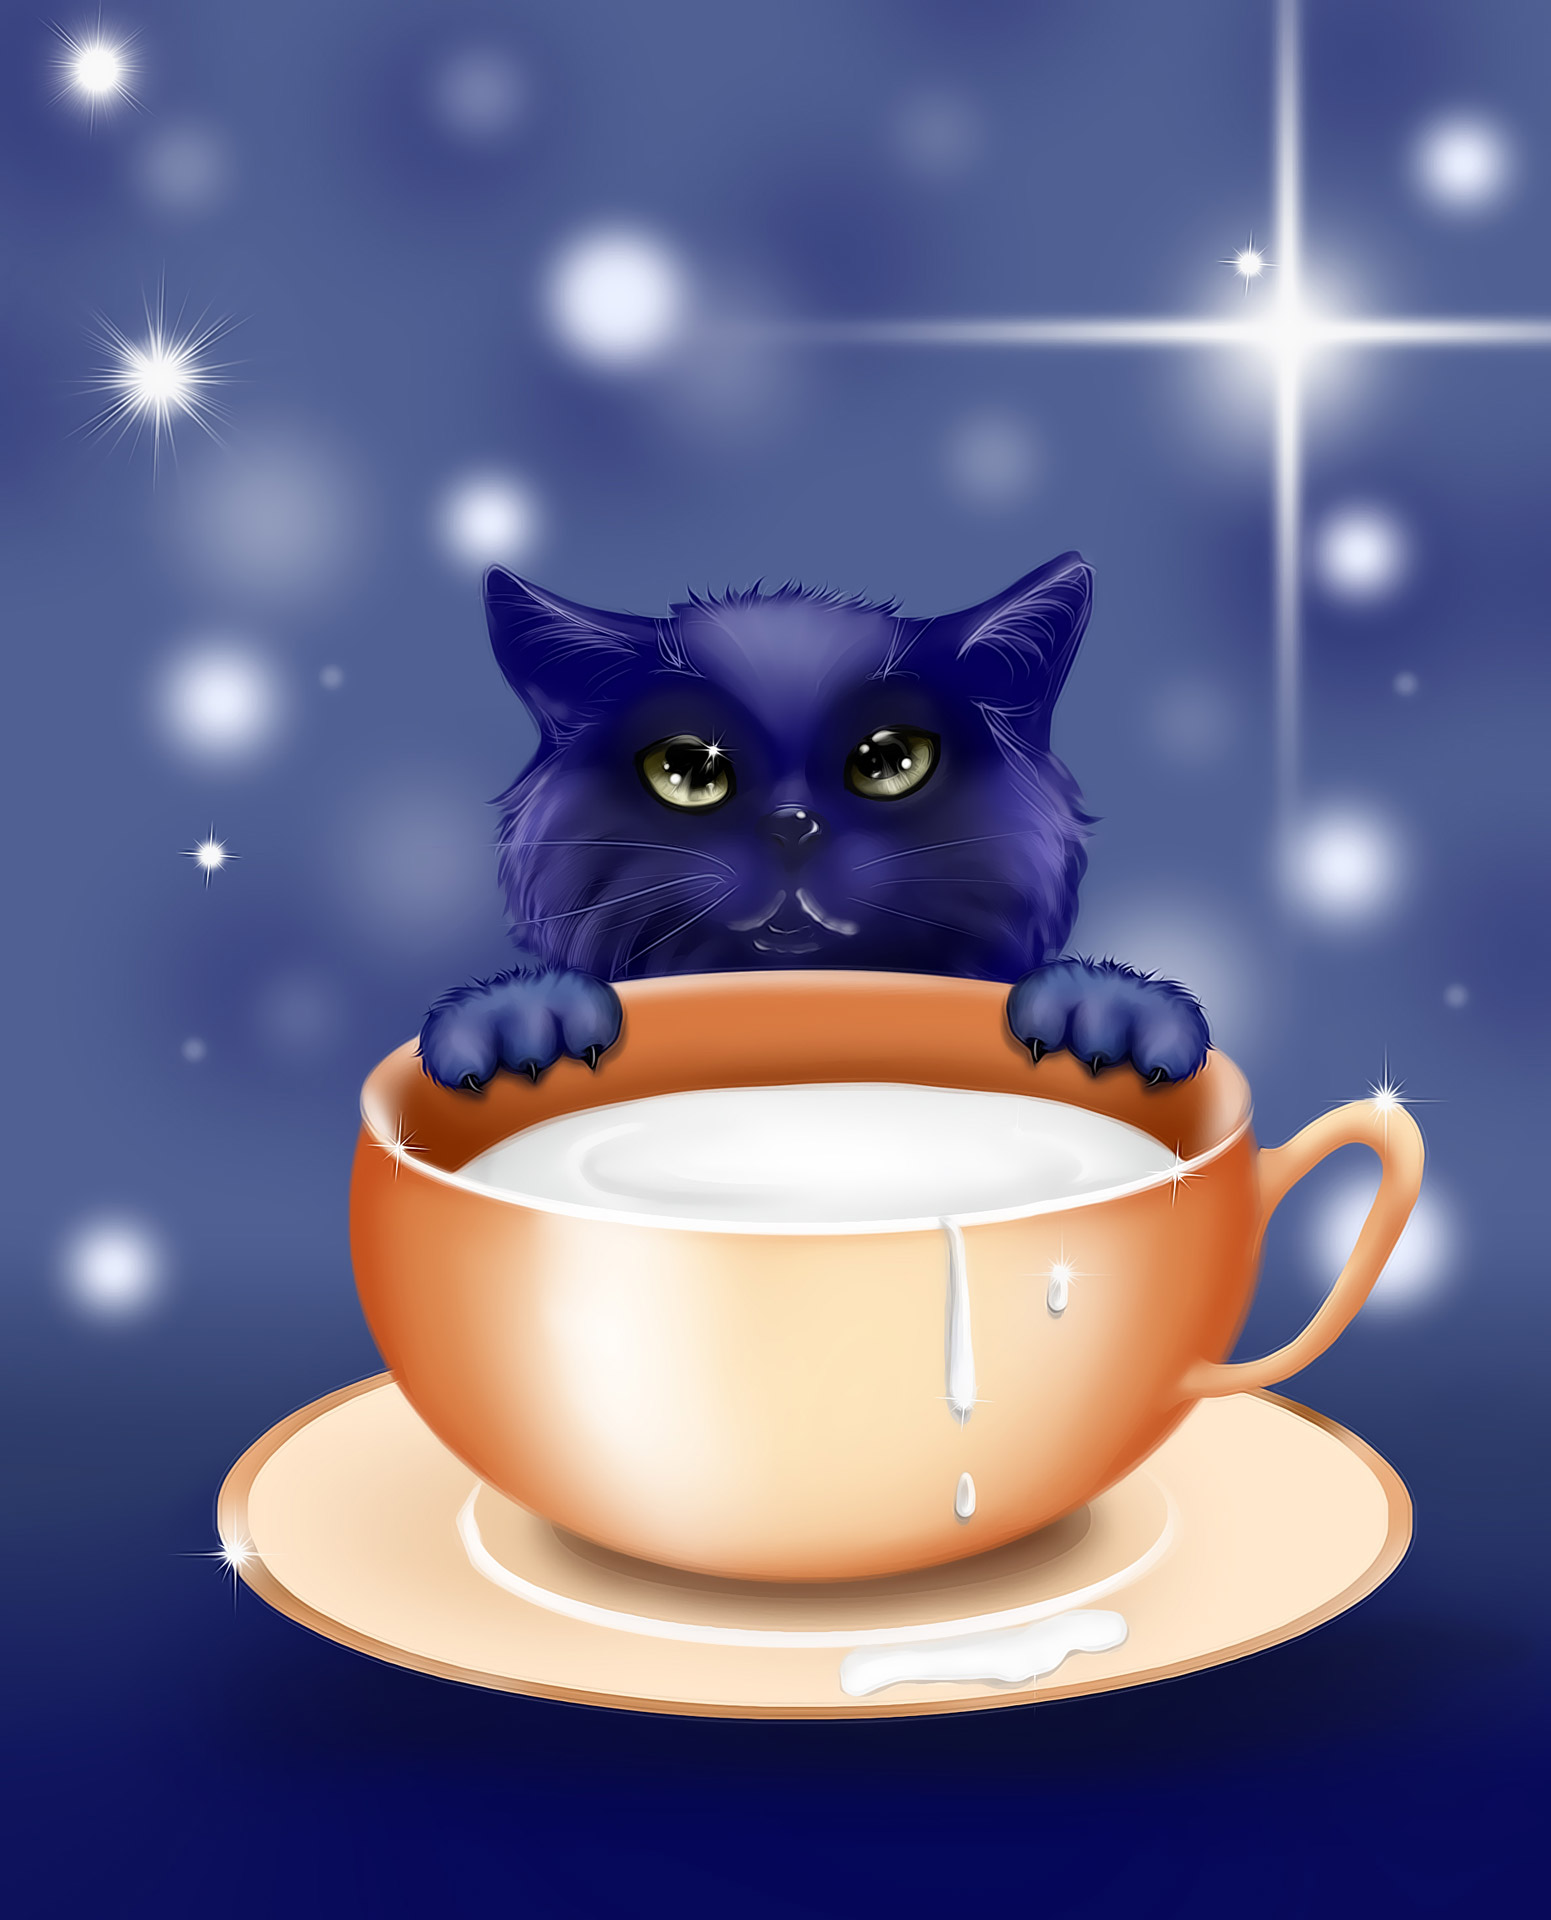 kitten illustrations story free photo